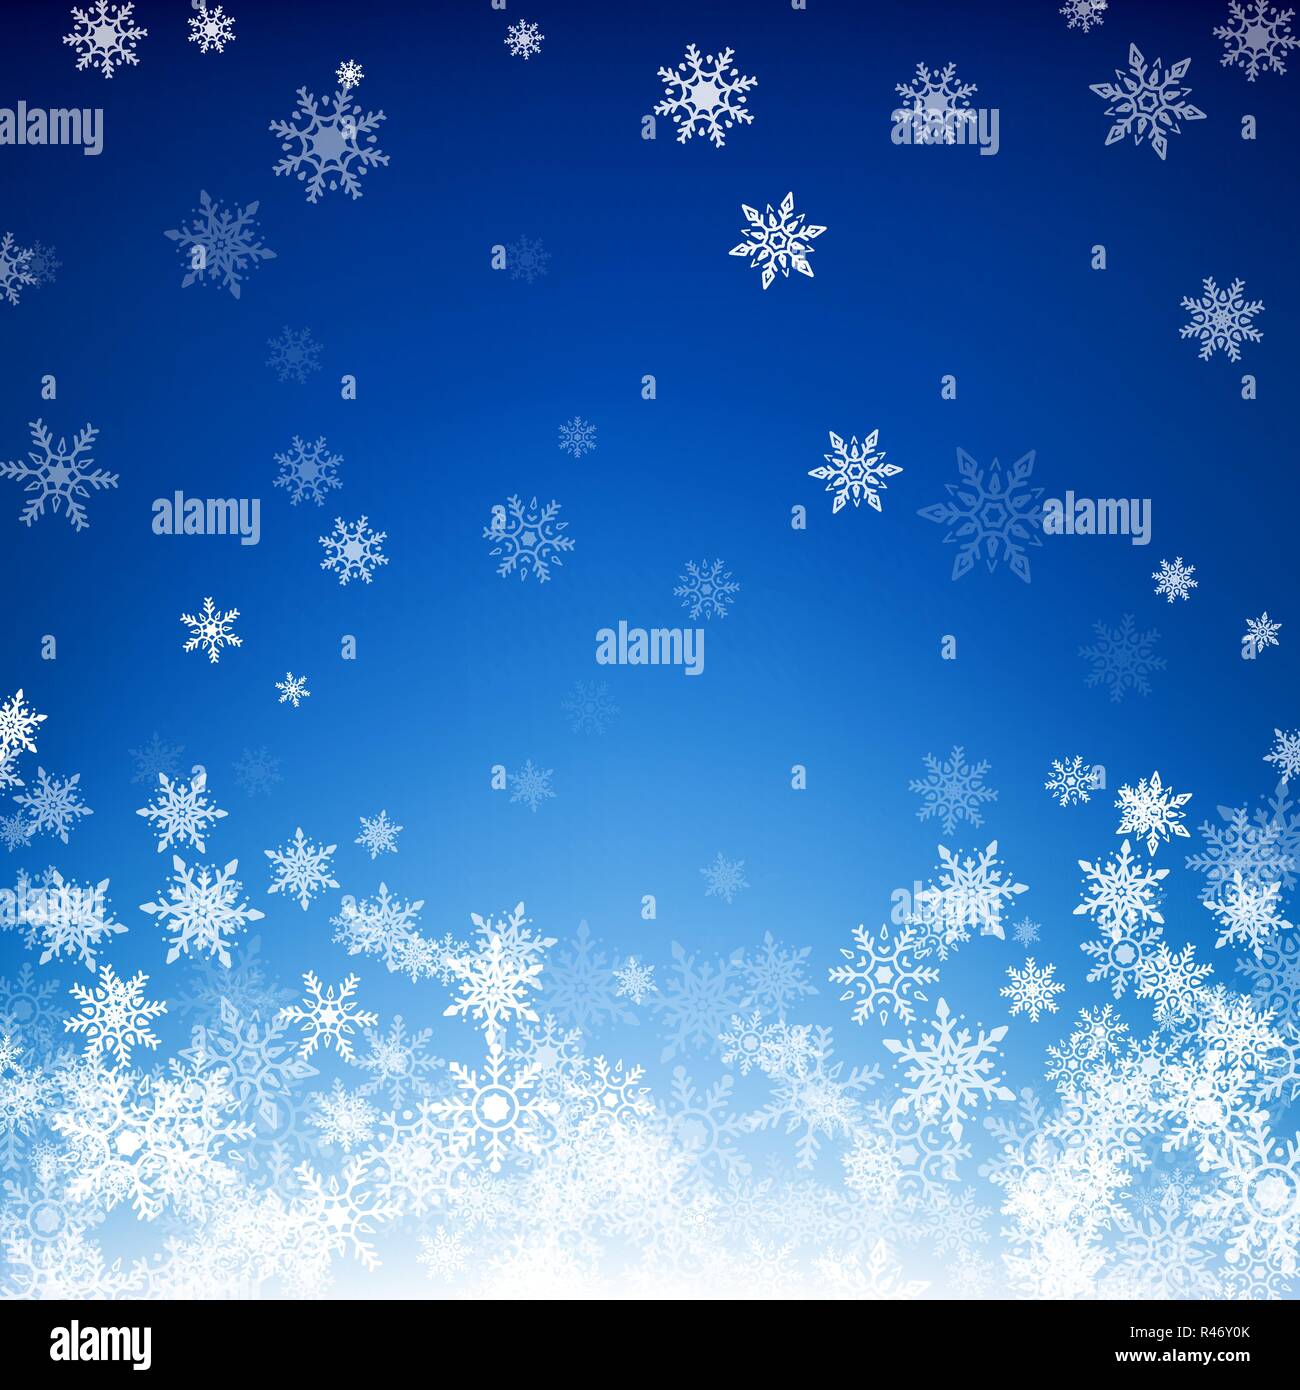 Blau Weihnachten Schneeflocken Hintergrund. Schneeflocken fallen weiß auf blauem Hintergrund. Vector Illustration Stock Vektor